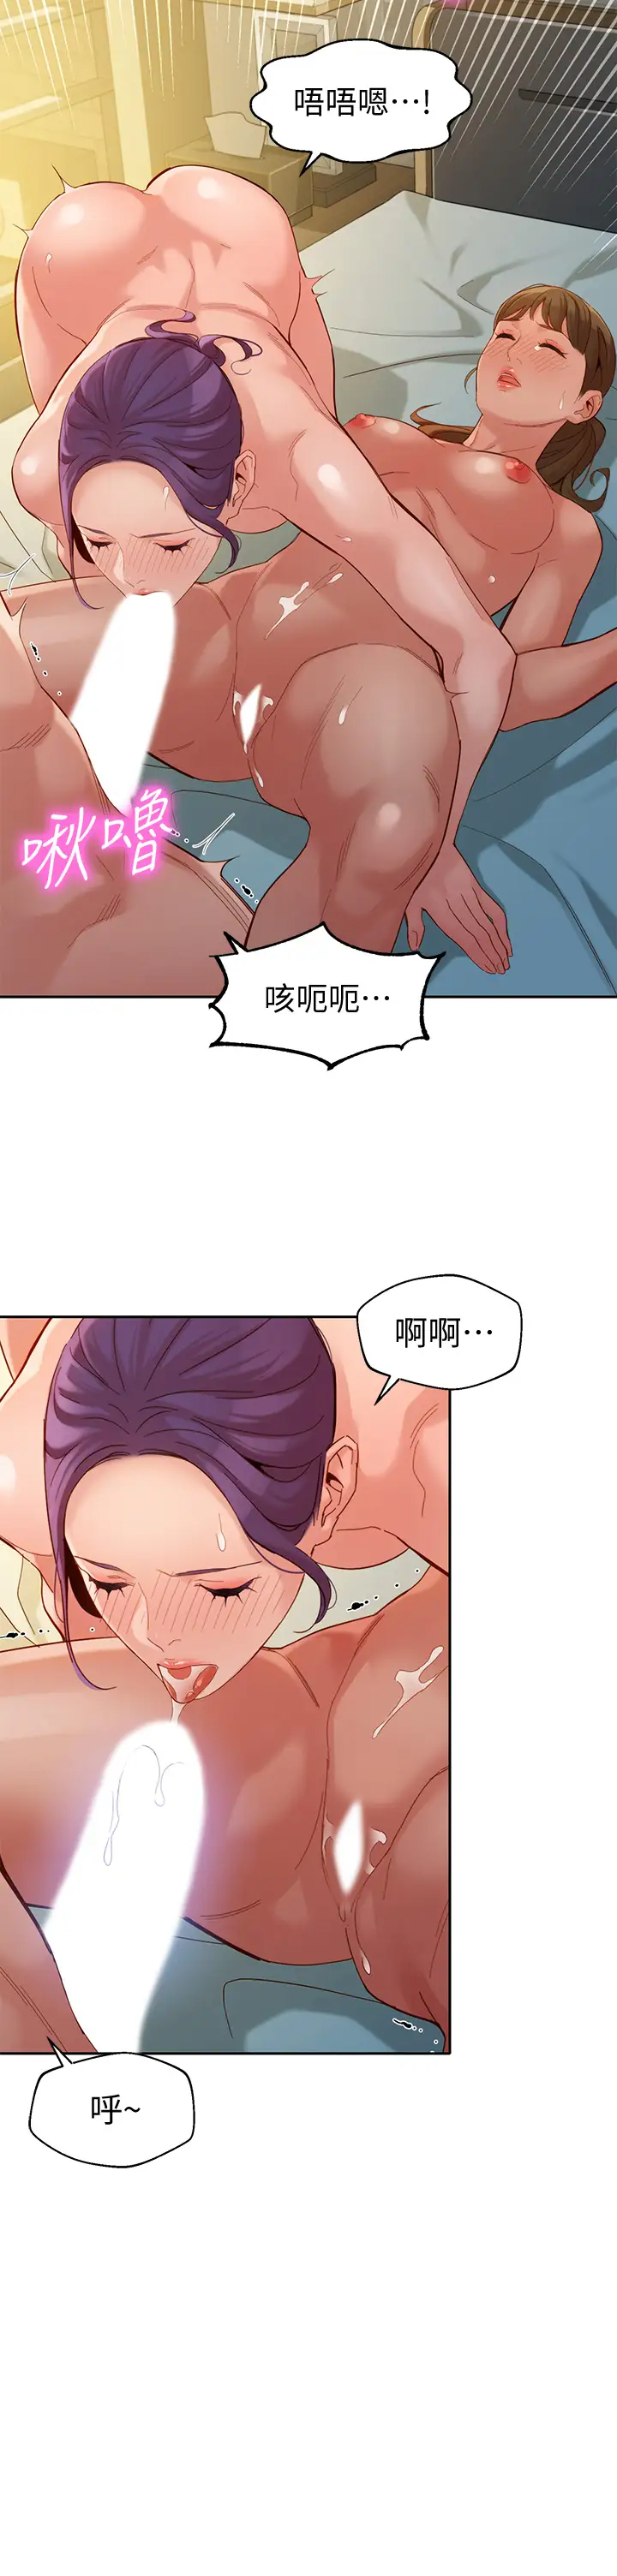 韩国污漫画 女神寫真 第52话淫靡的双飞体验 29